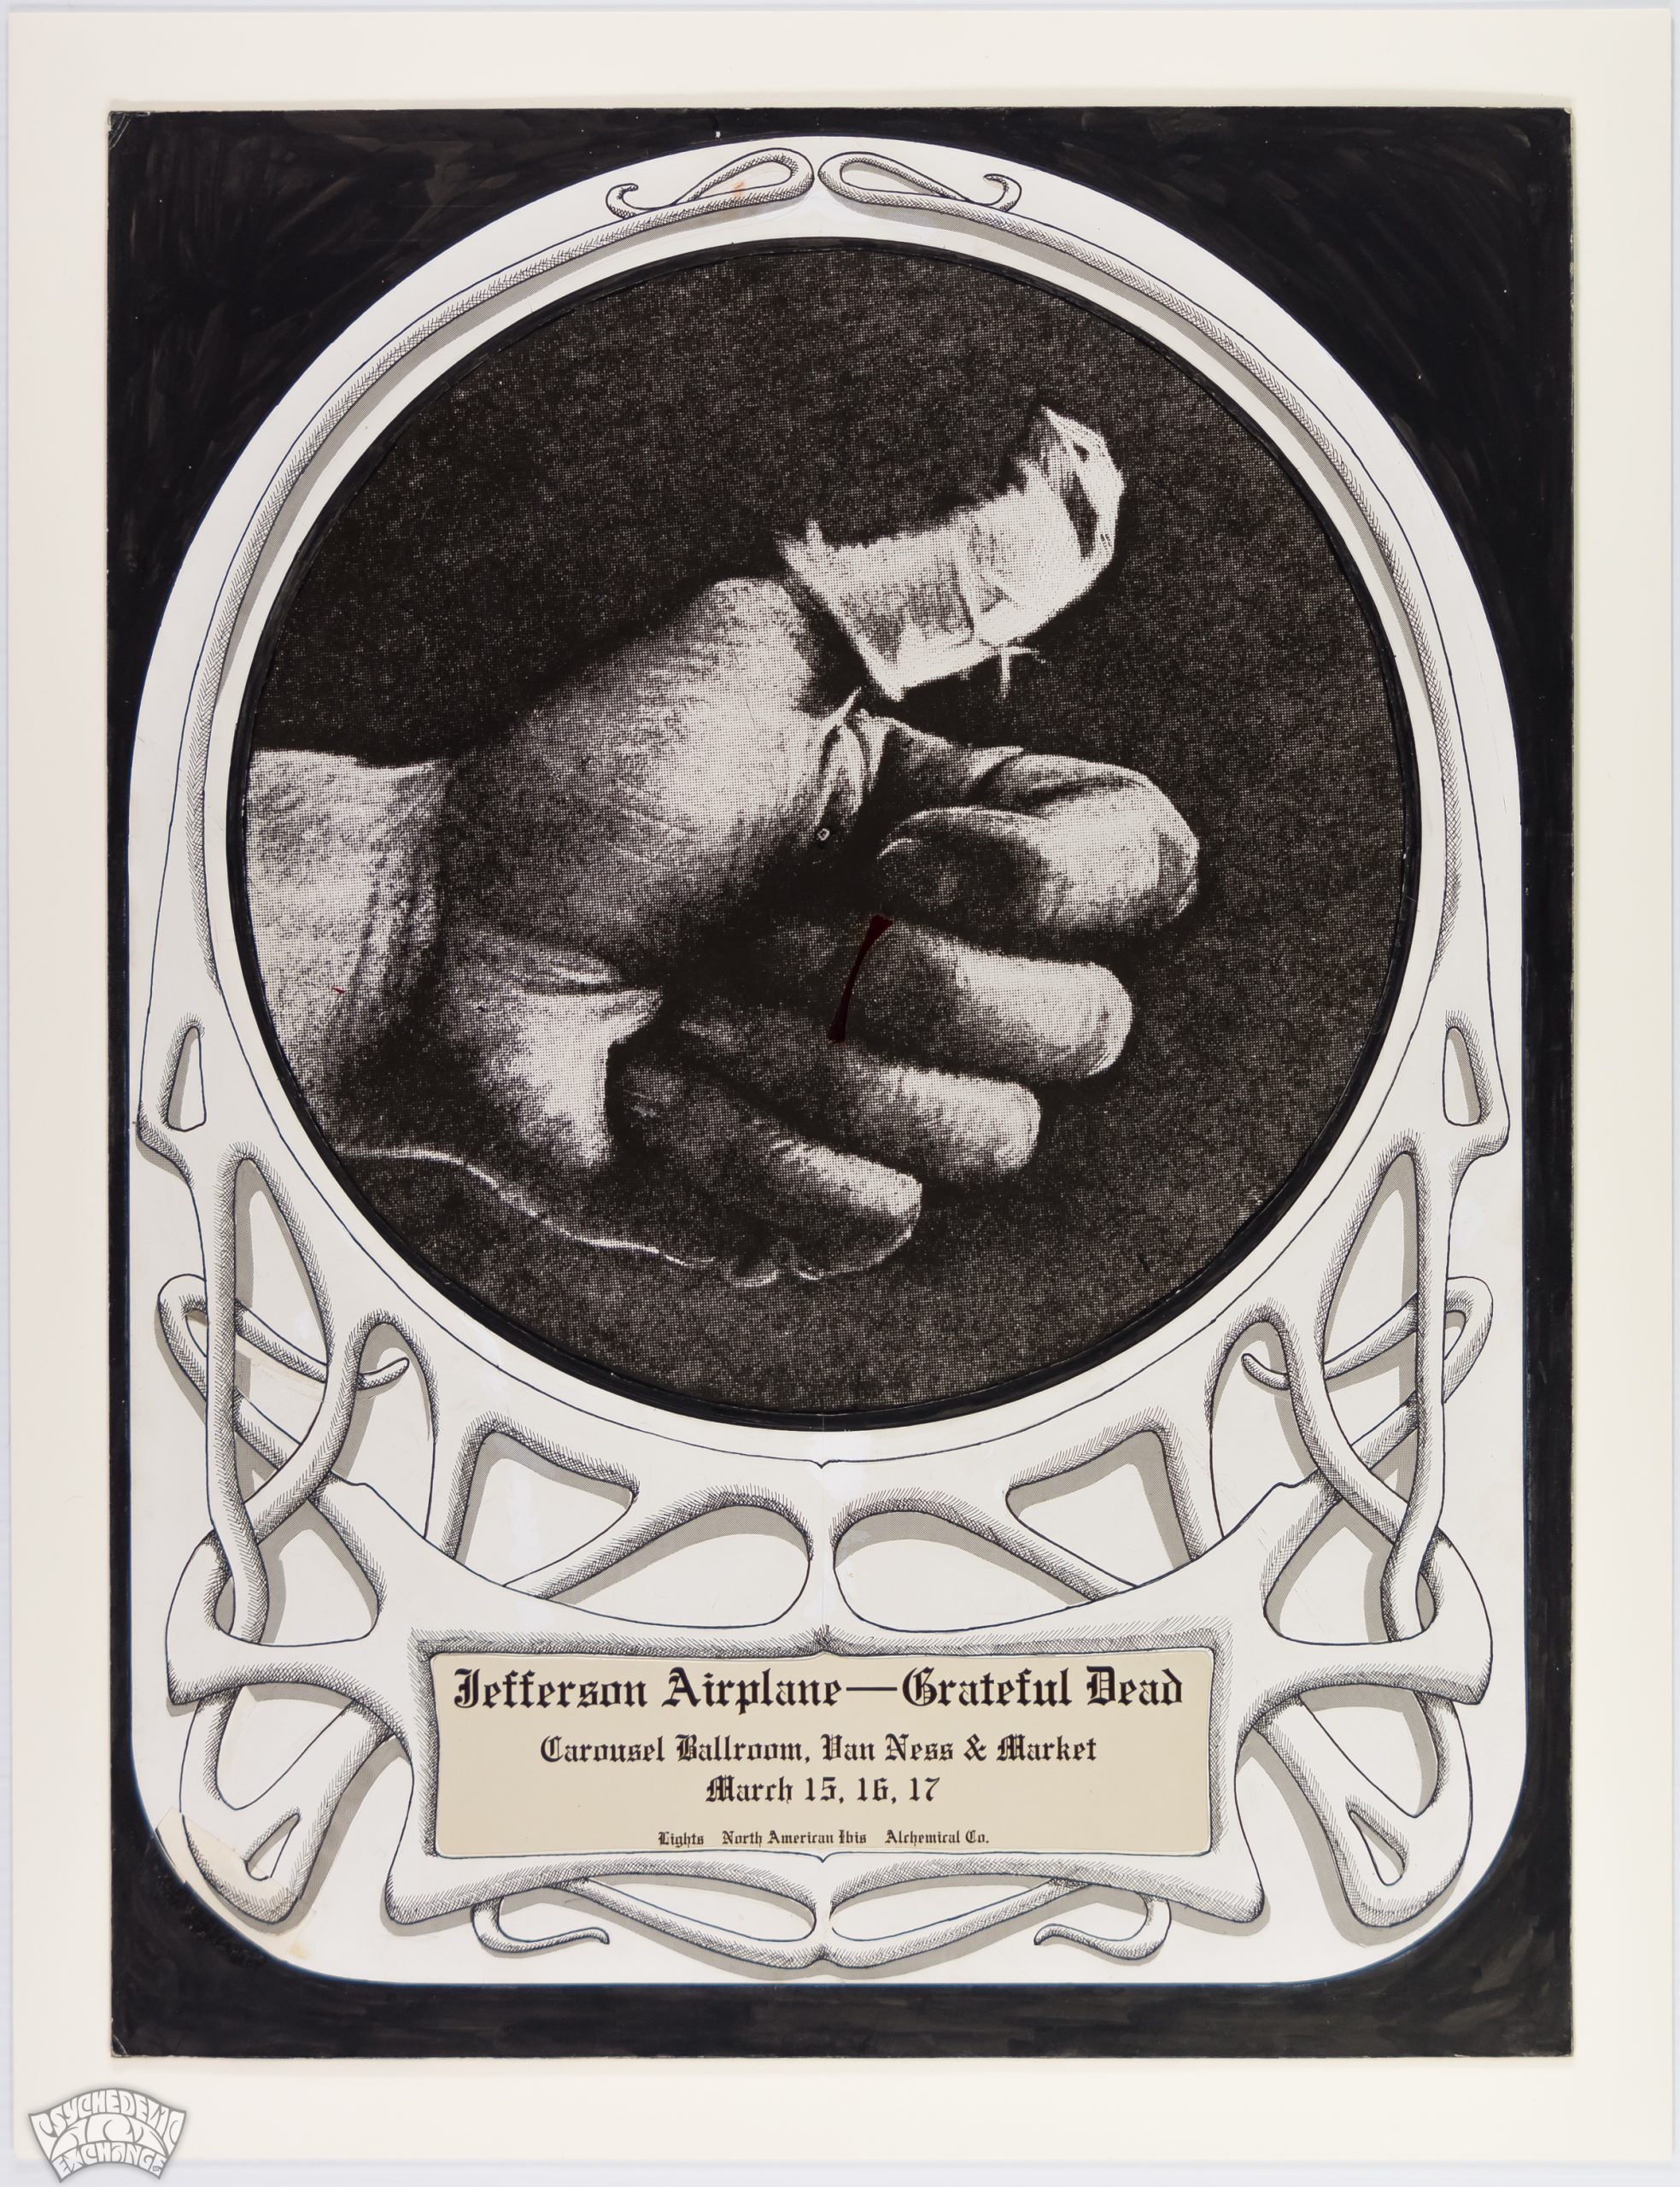 Lost Original Grateful Dead Art (1968) Surfaces for Public Auction Ending June 17th